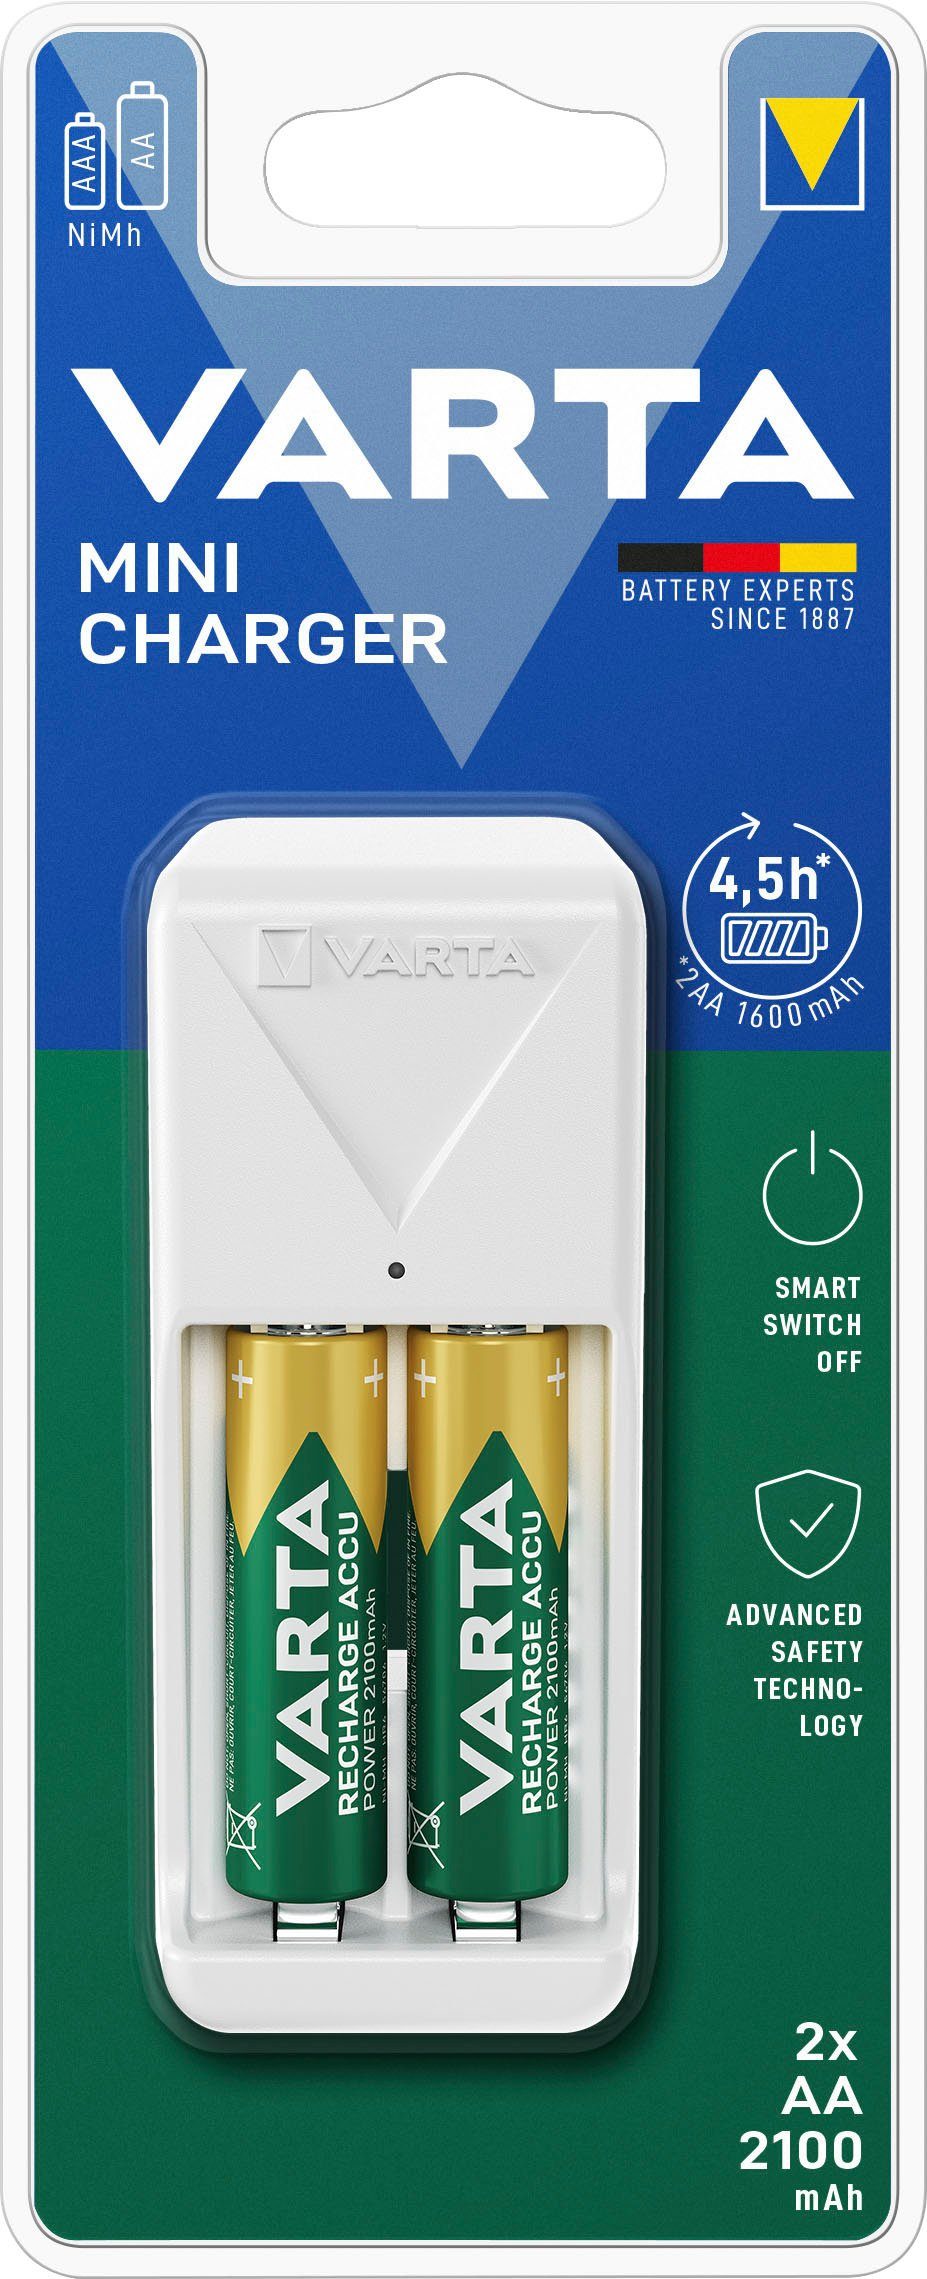 (1-tlg) Charger Mini VARTA Batterie-Ladegerät